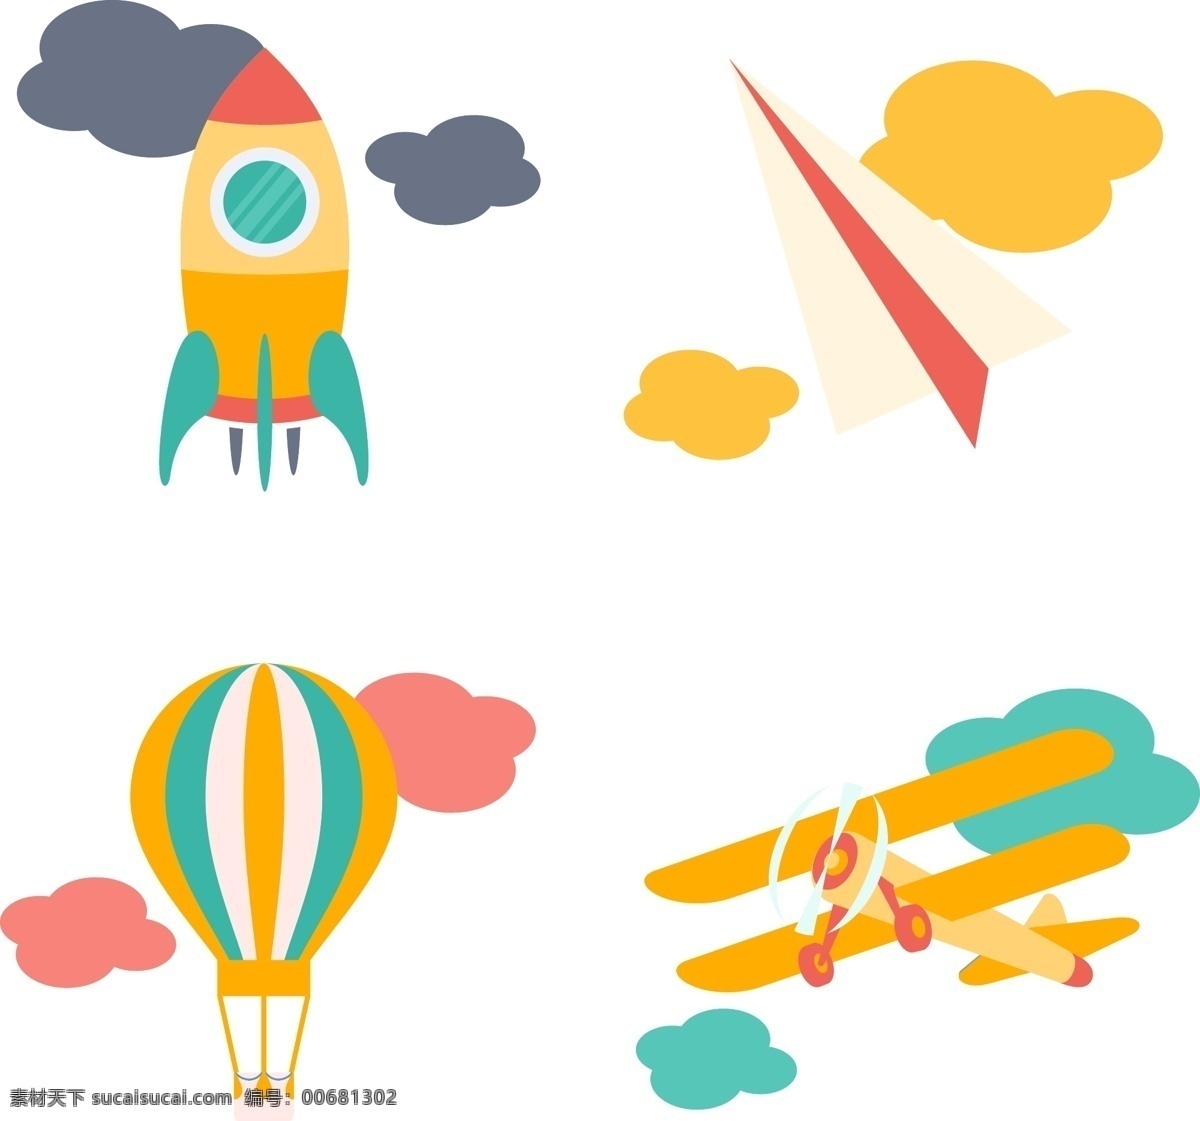 卡通 矢量 可爱 飞机 热气球 装饰 图案 创意 元素 装饰图案 纸飞机 云朵 排版 排版设计 商业